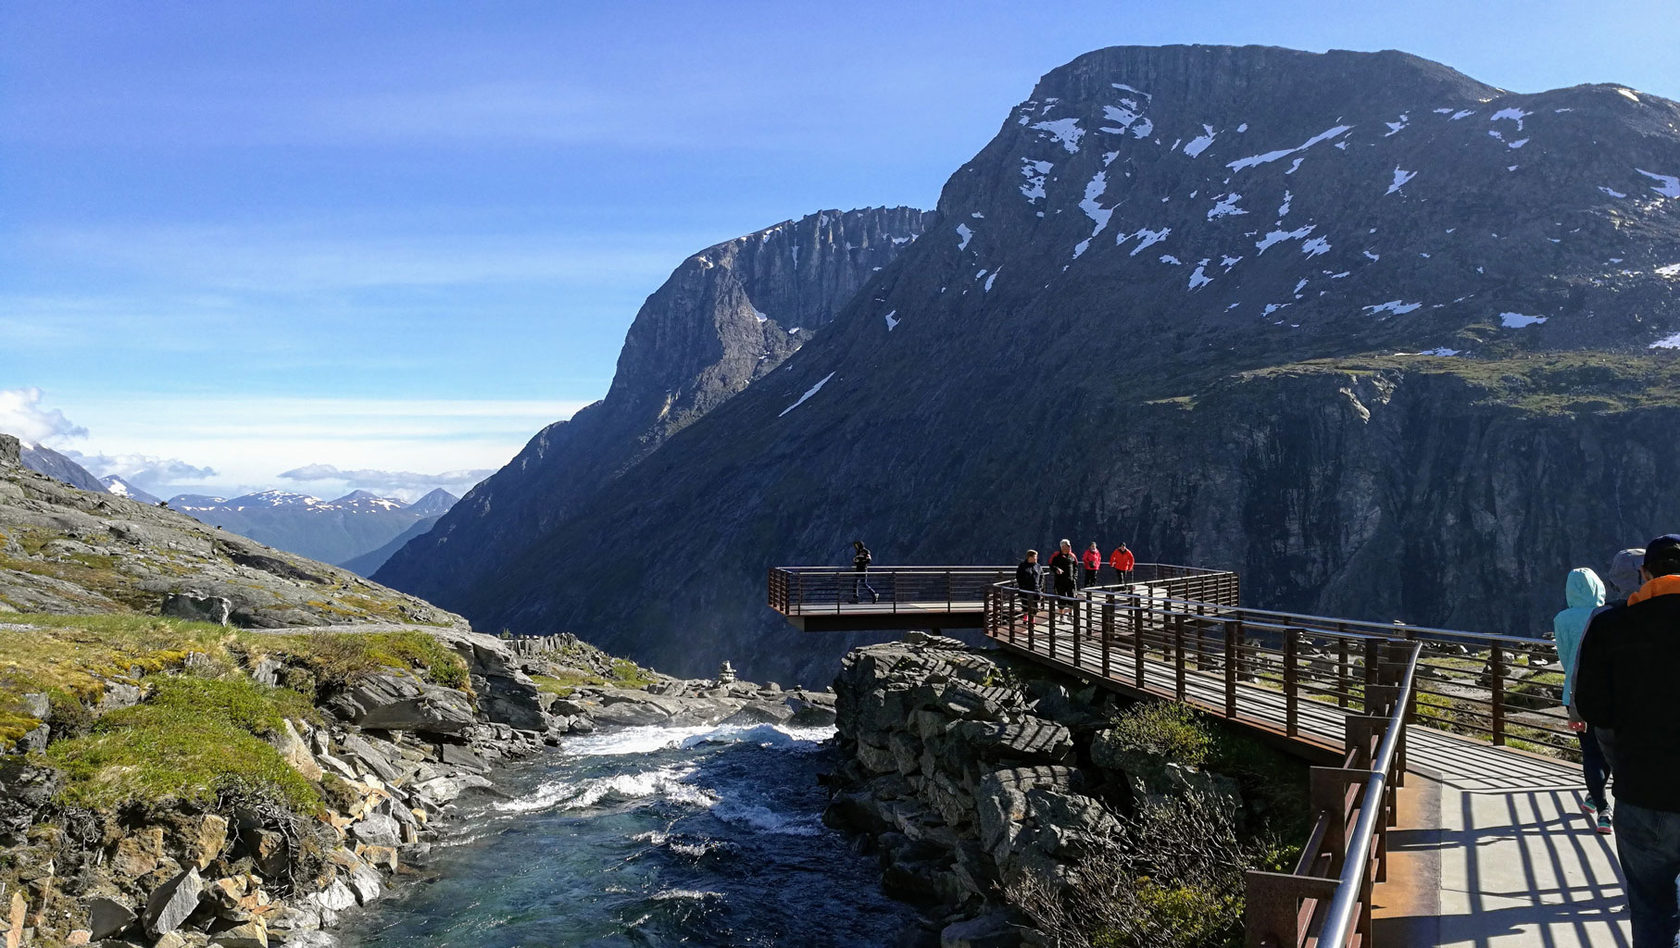 Норвегия относится к европе. Туристический маршрут, Сельвик, Норвегия. Лонг Гир Норвегия. Норвегия туристический маршрут по фьордам. Ускедален Норвегия.